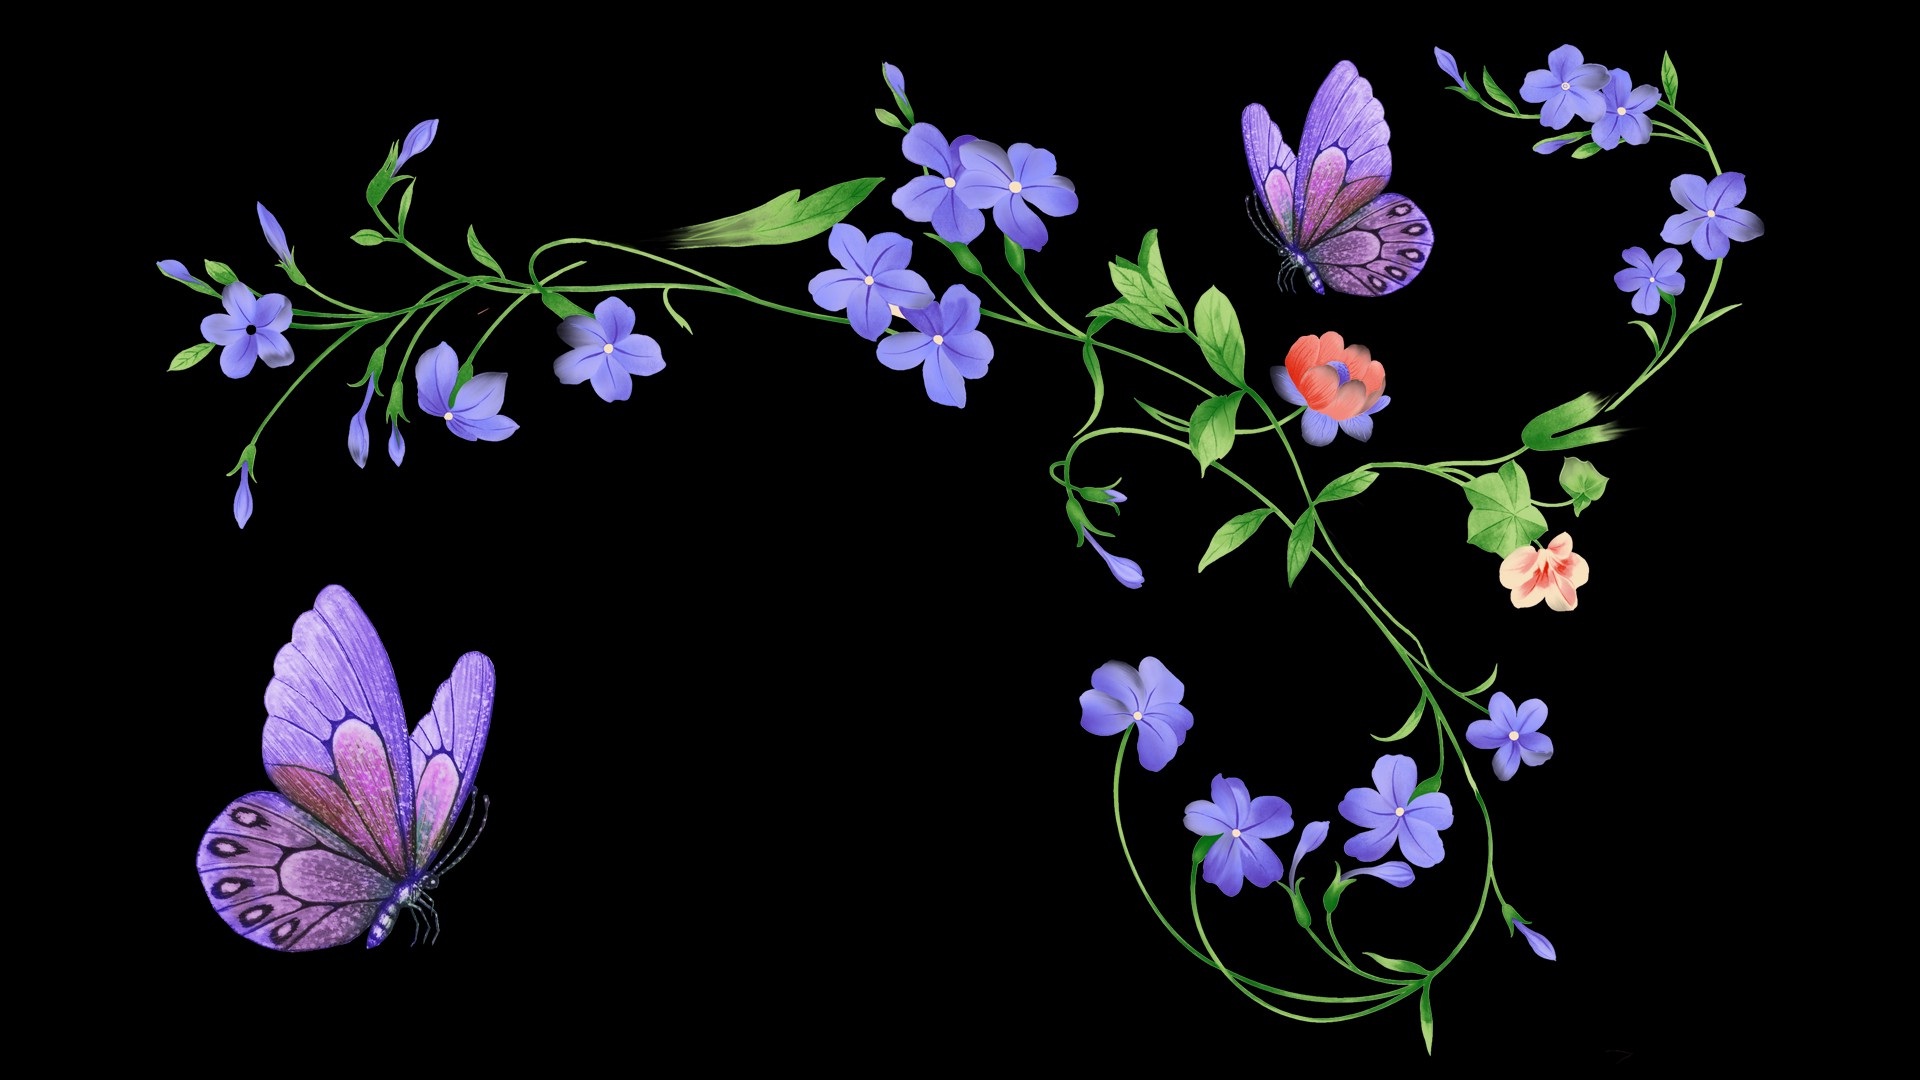 Скачать обои бесплатно Цветок, Бабочка, Листва, Цветочный, Пурпурный, Художественные картинка на рабочий стол ПК